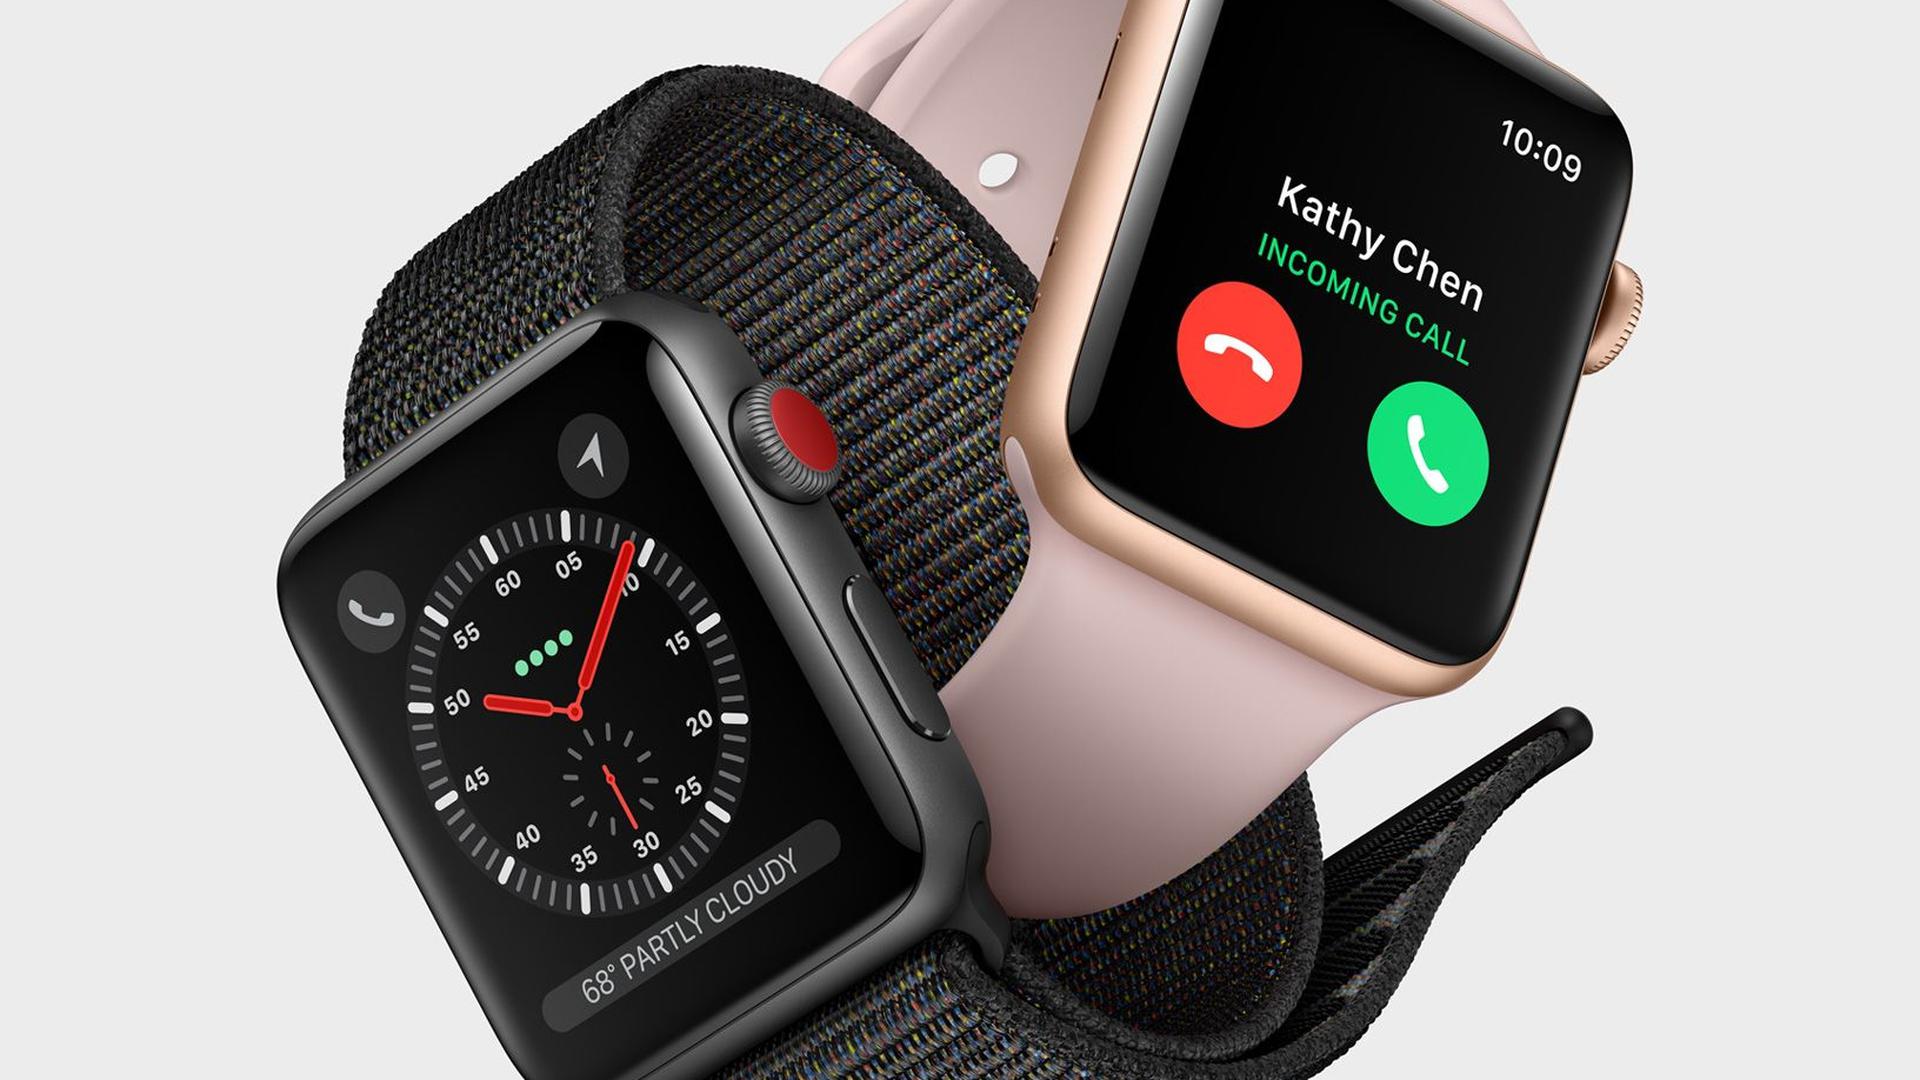 Près d'une Apple Watch sur deux vendue dans le monde en 2017 est une Series 3. 